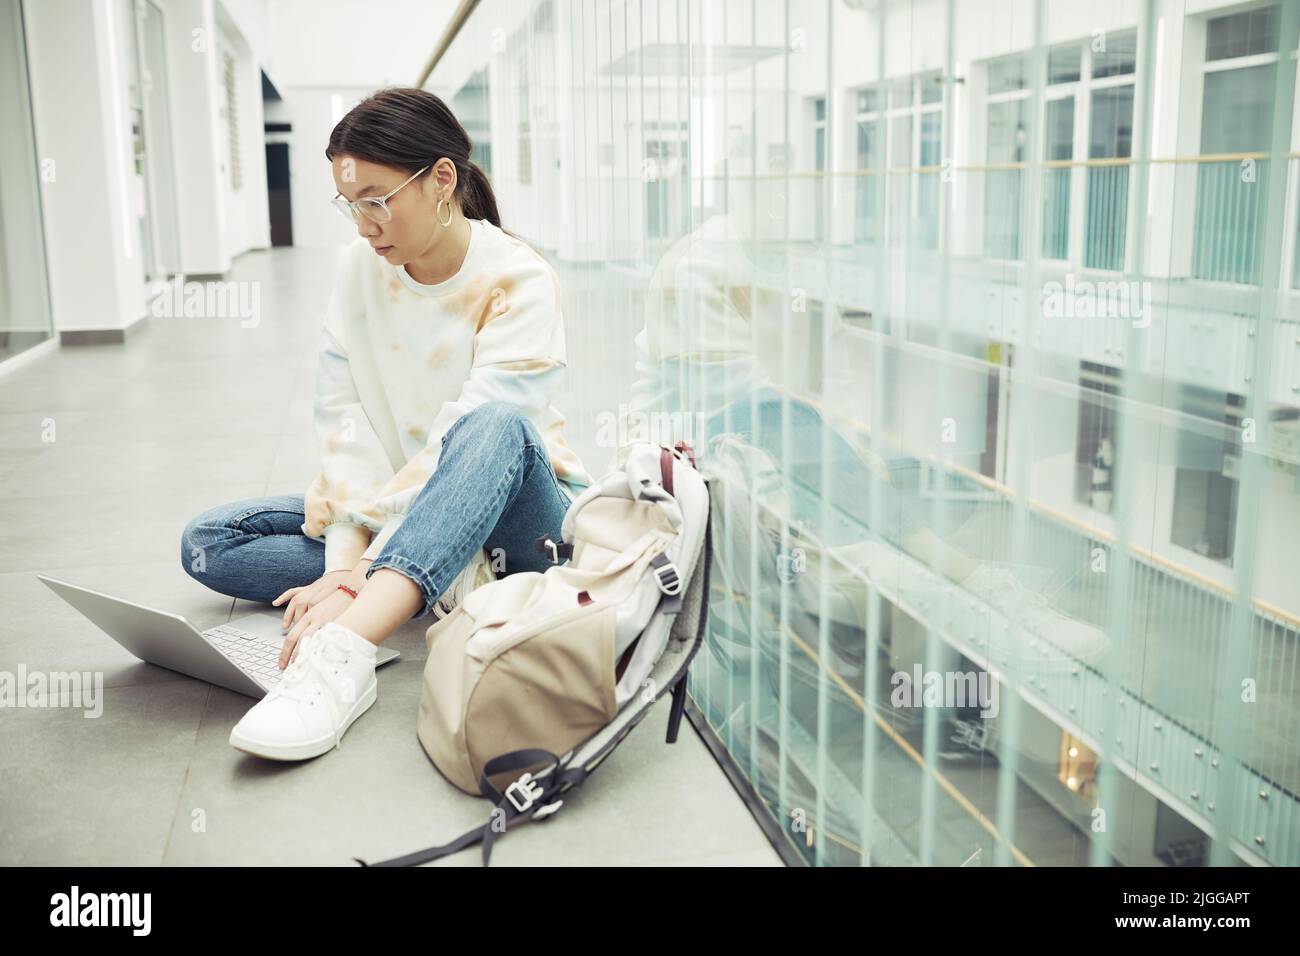 Serious Teenager Mädchen asiatischer Ethnie in Casualwear sitzen auf dem Boden der College-Korridor und suchen durch Online-Informationen Stockfoto